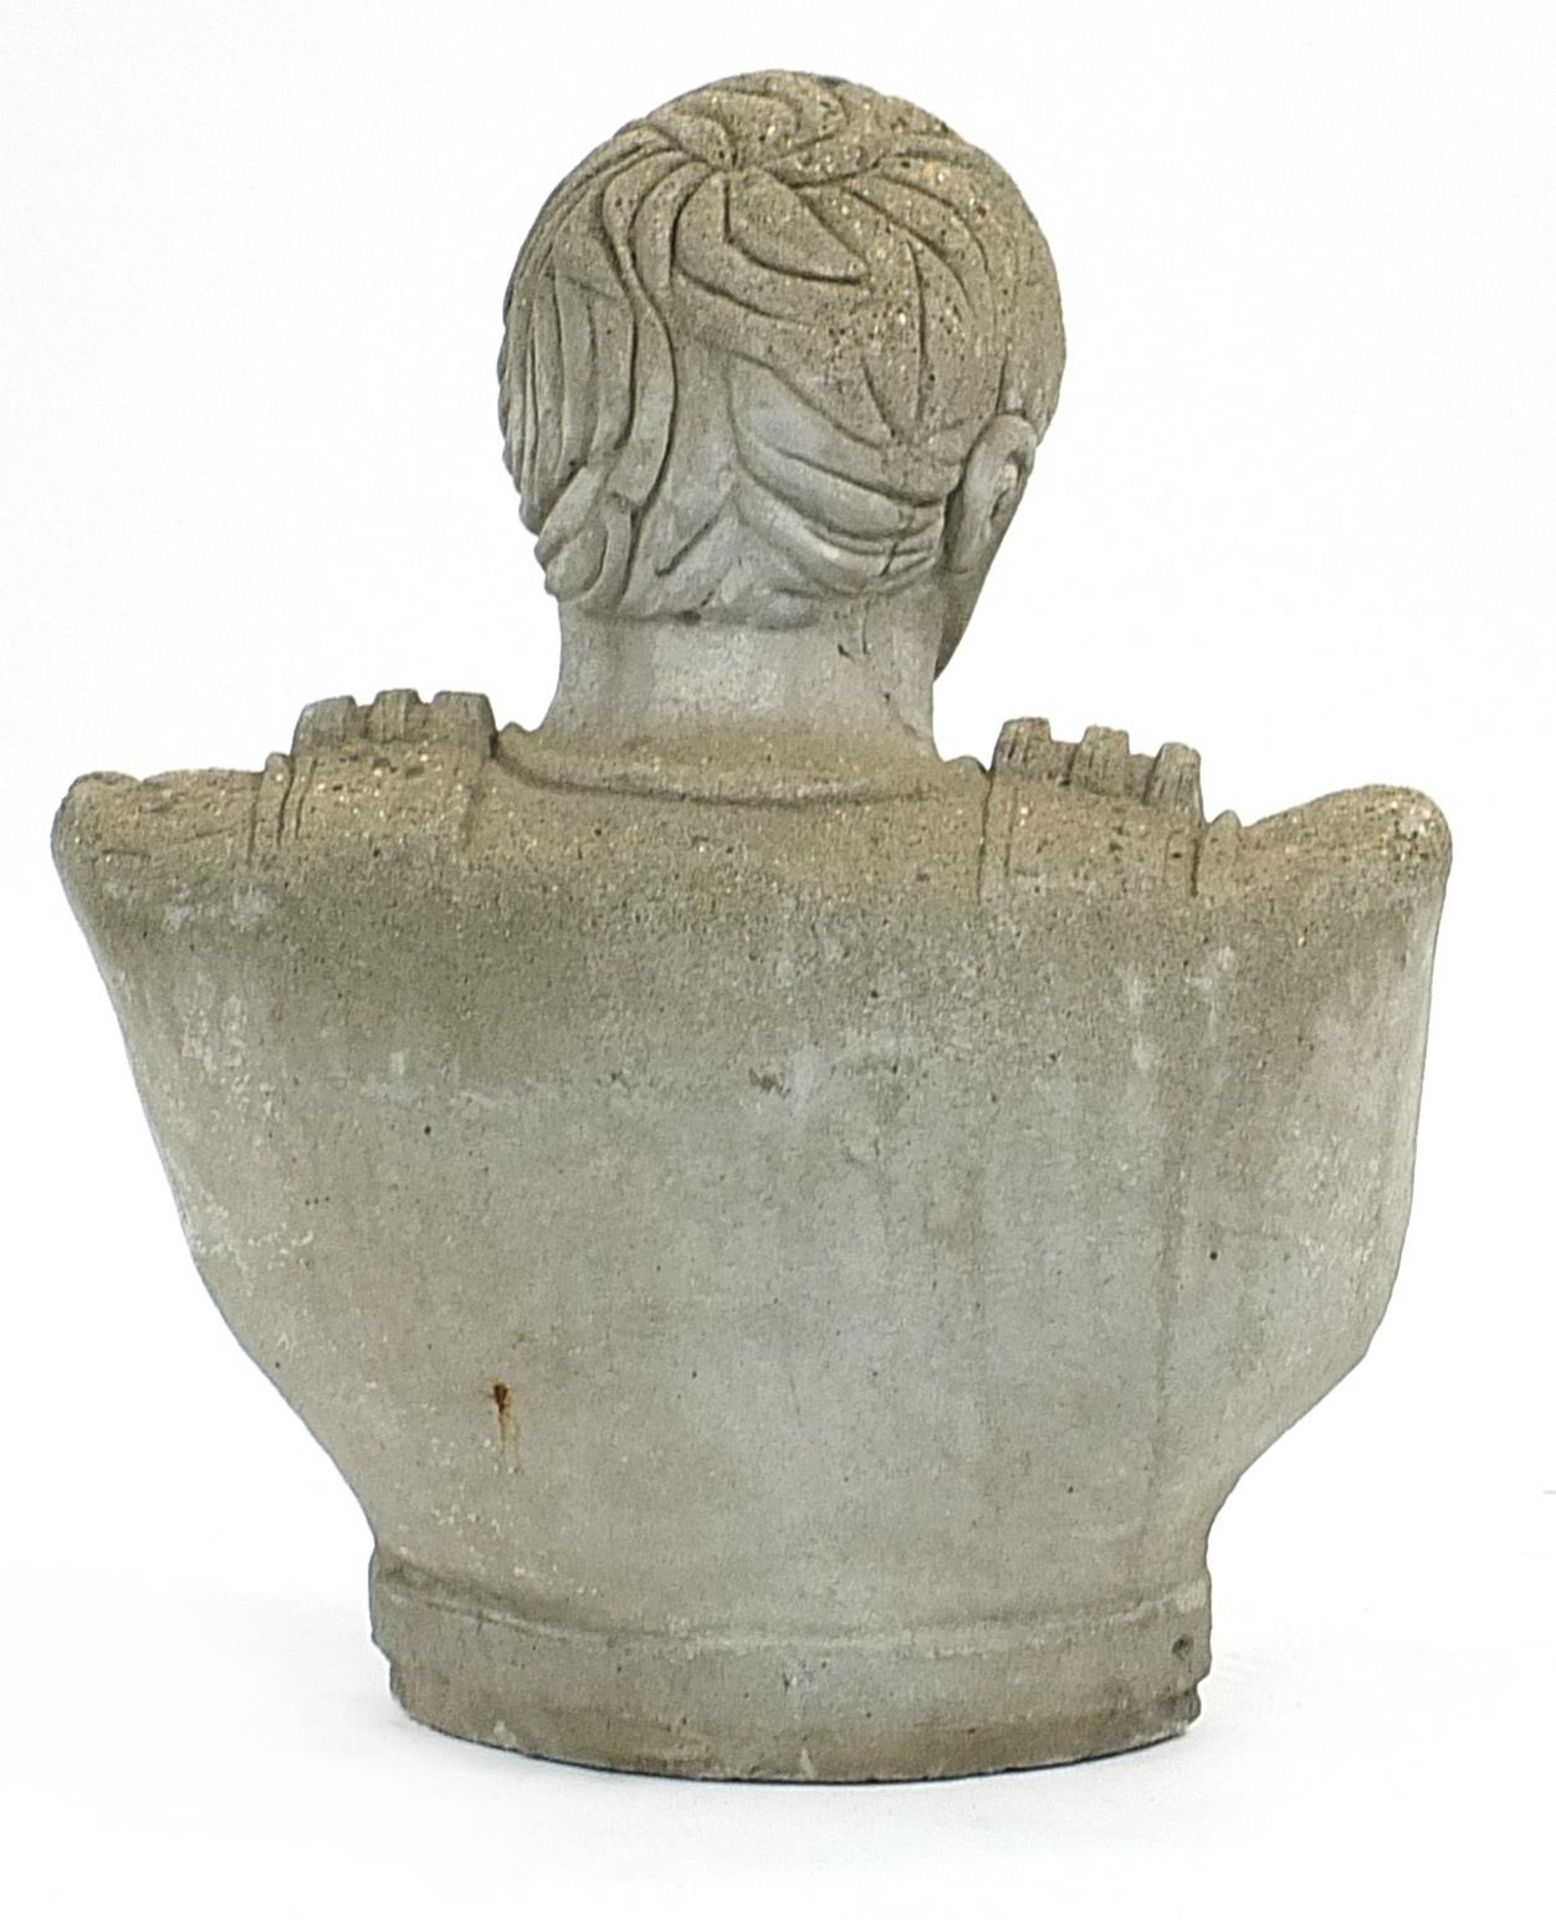 Stoneware garden bust of a Roman Emperor, 56cm high - Image 2 of 2